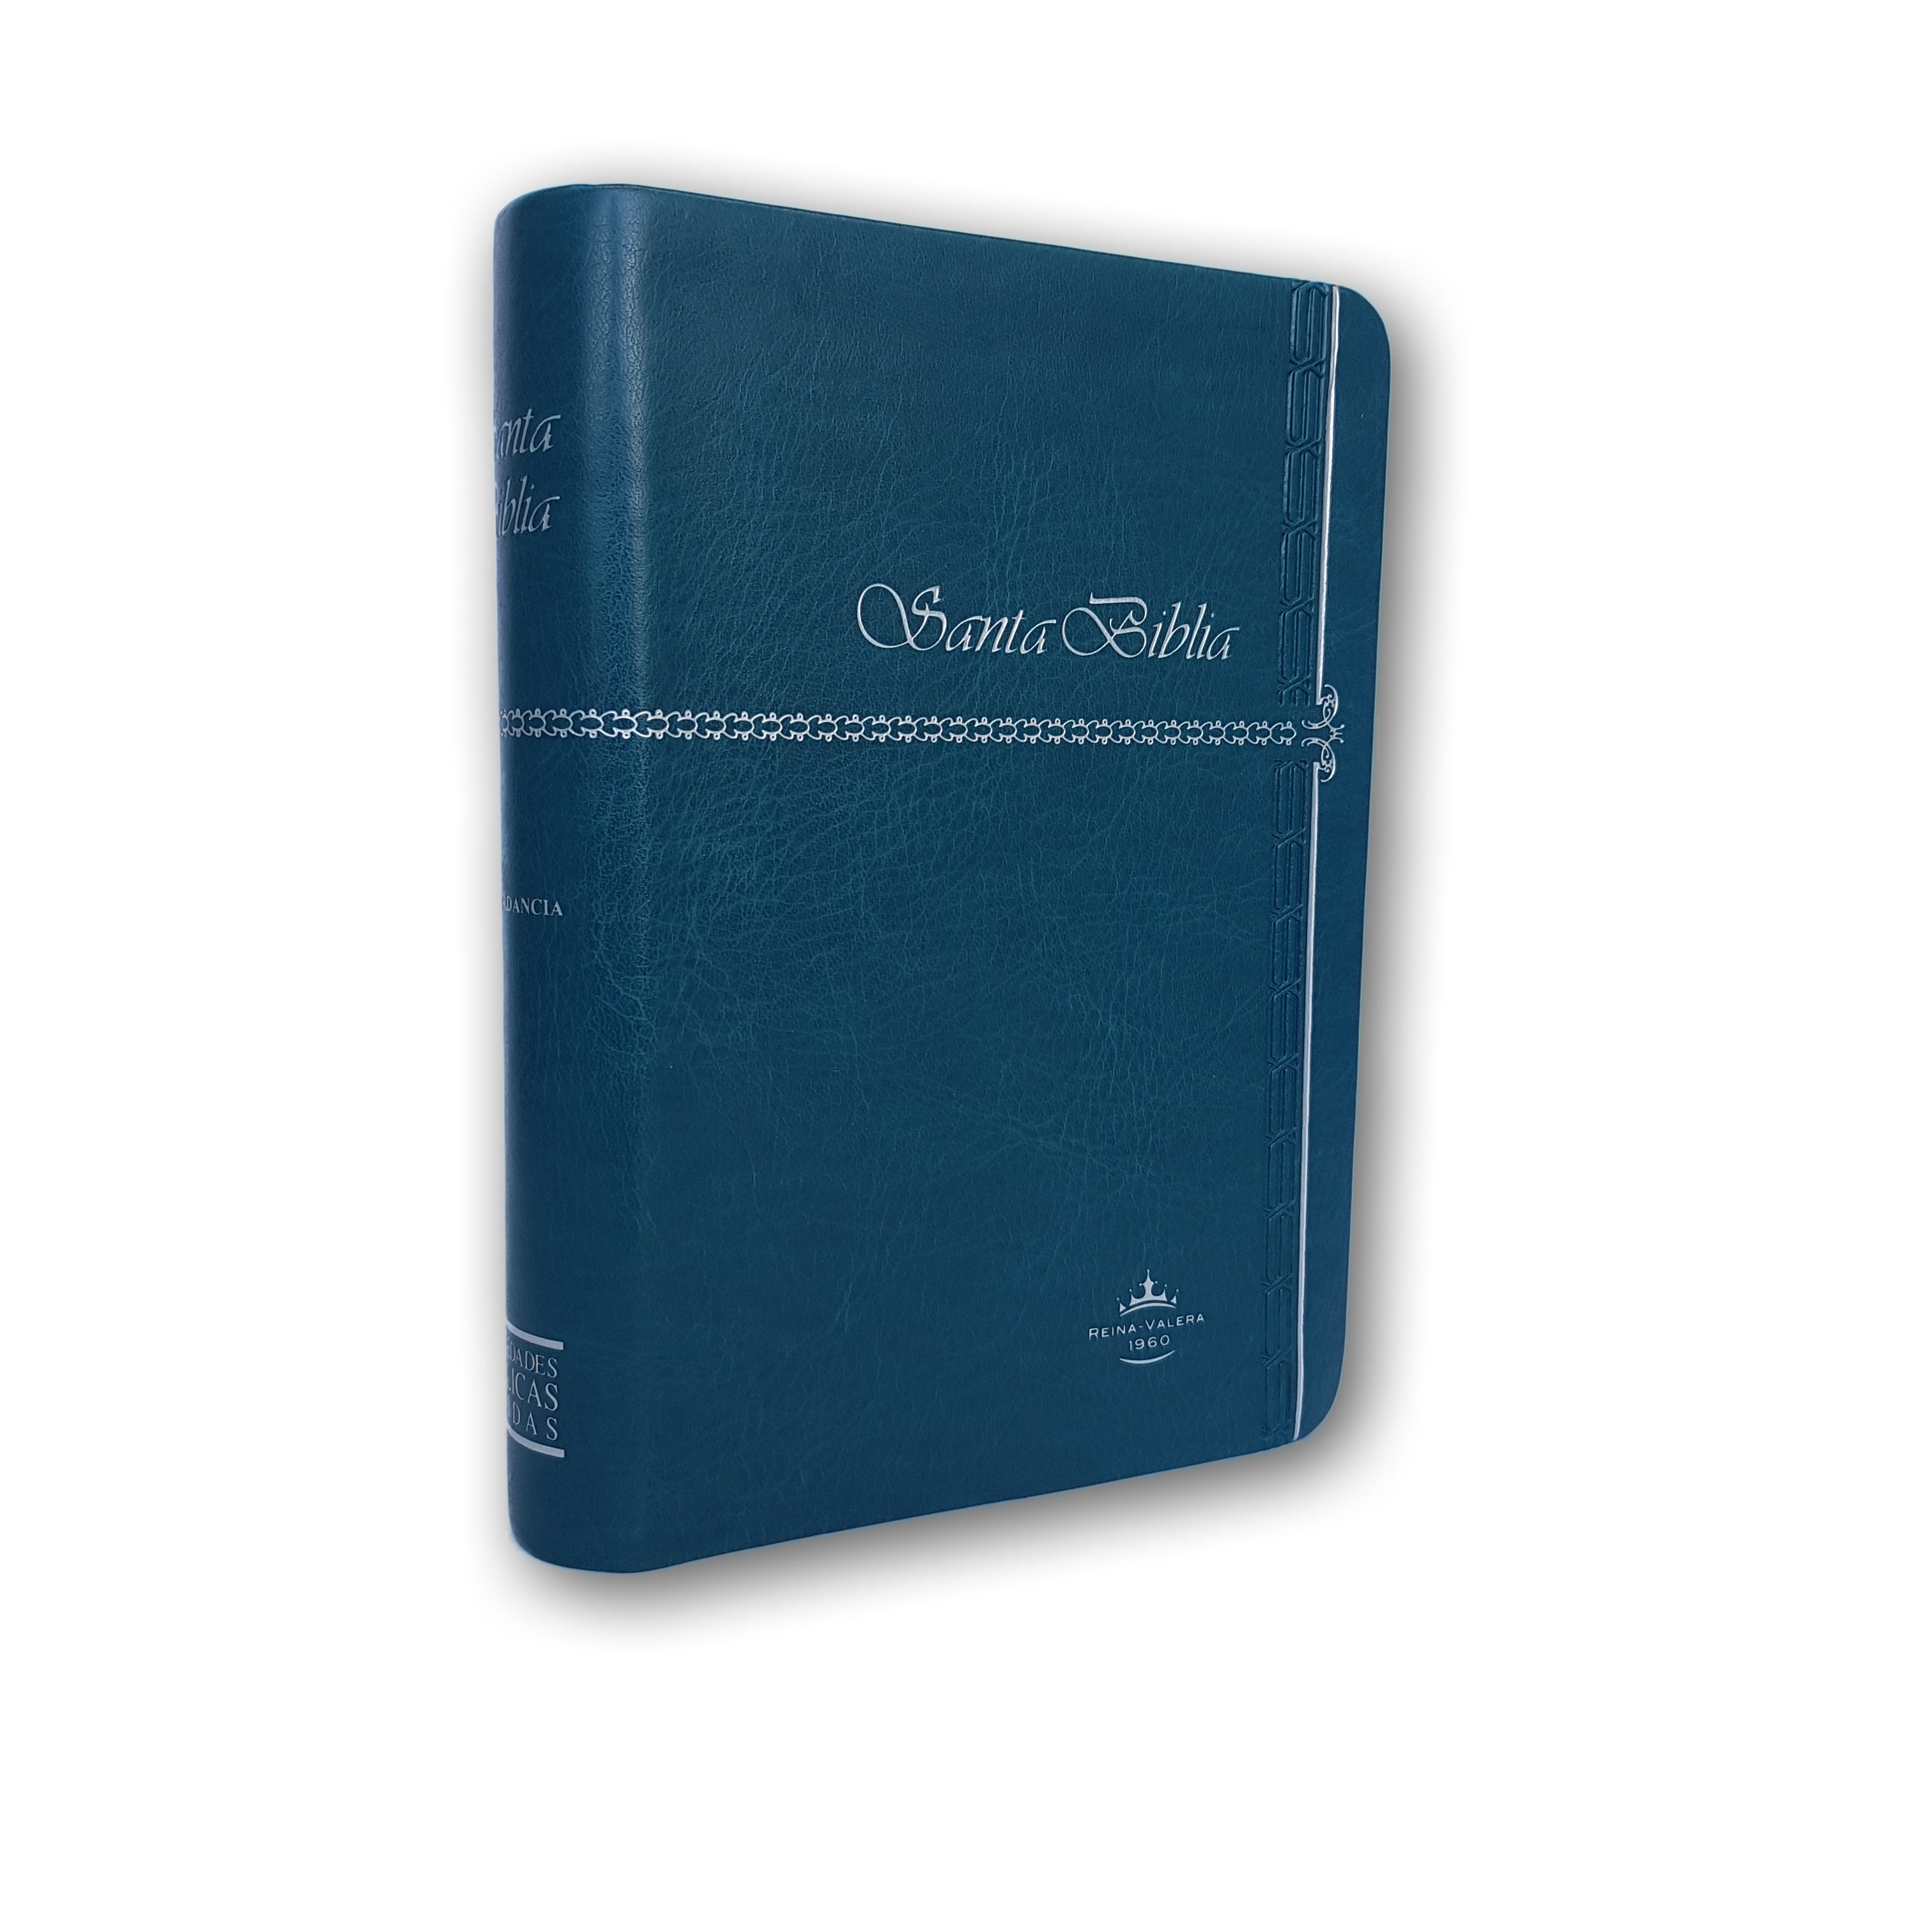 Santa Biblia RVR1960 Compacta c/índice Esmeralda